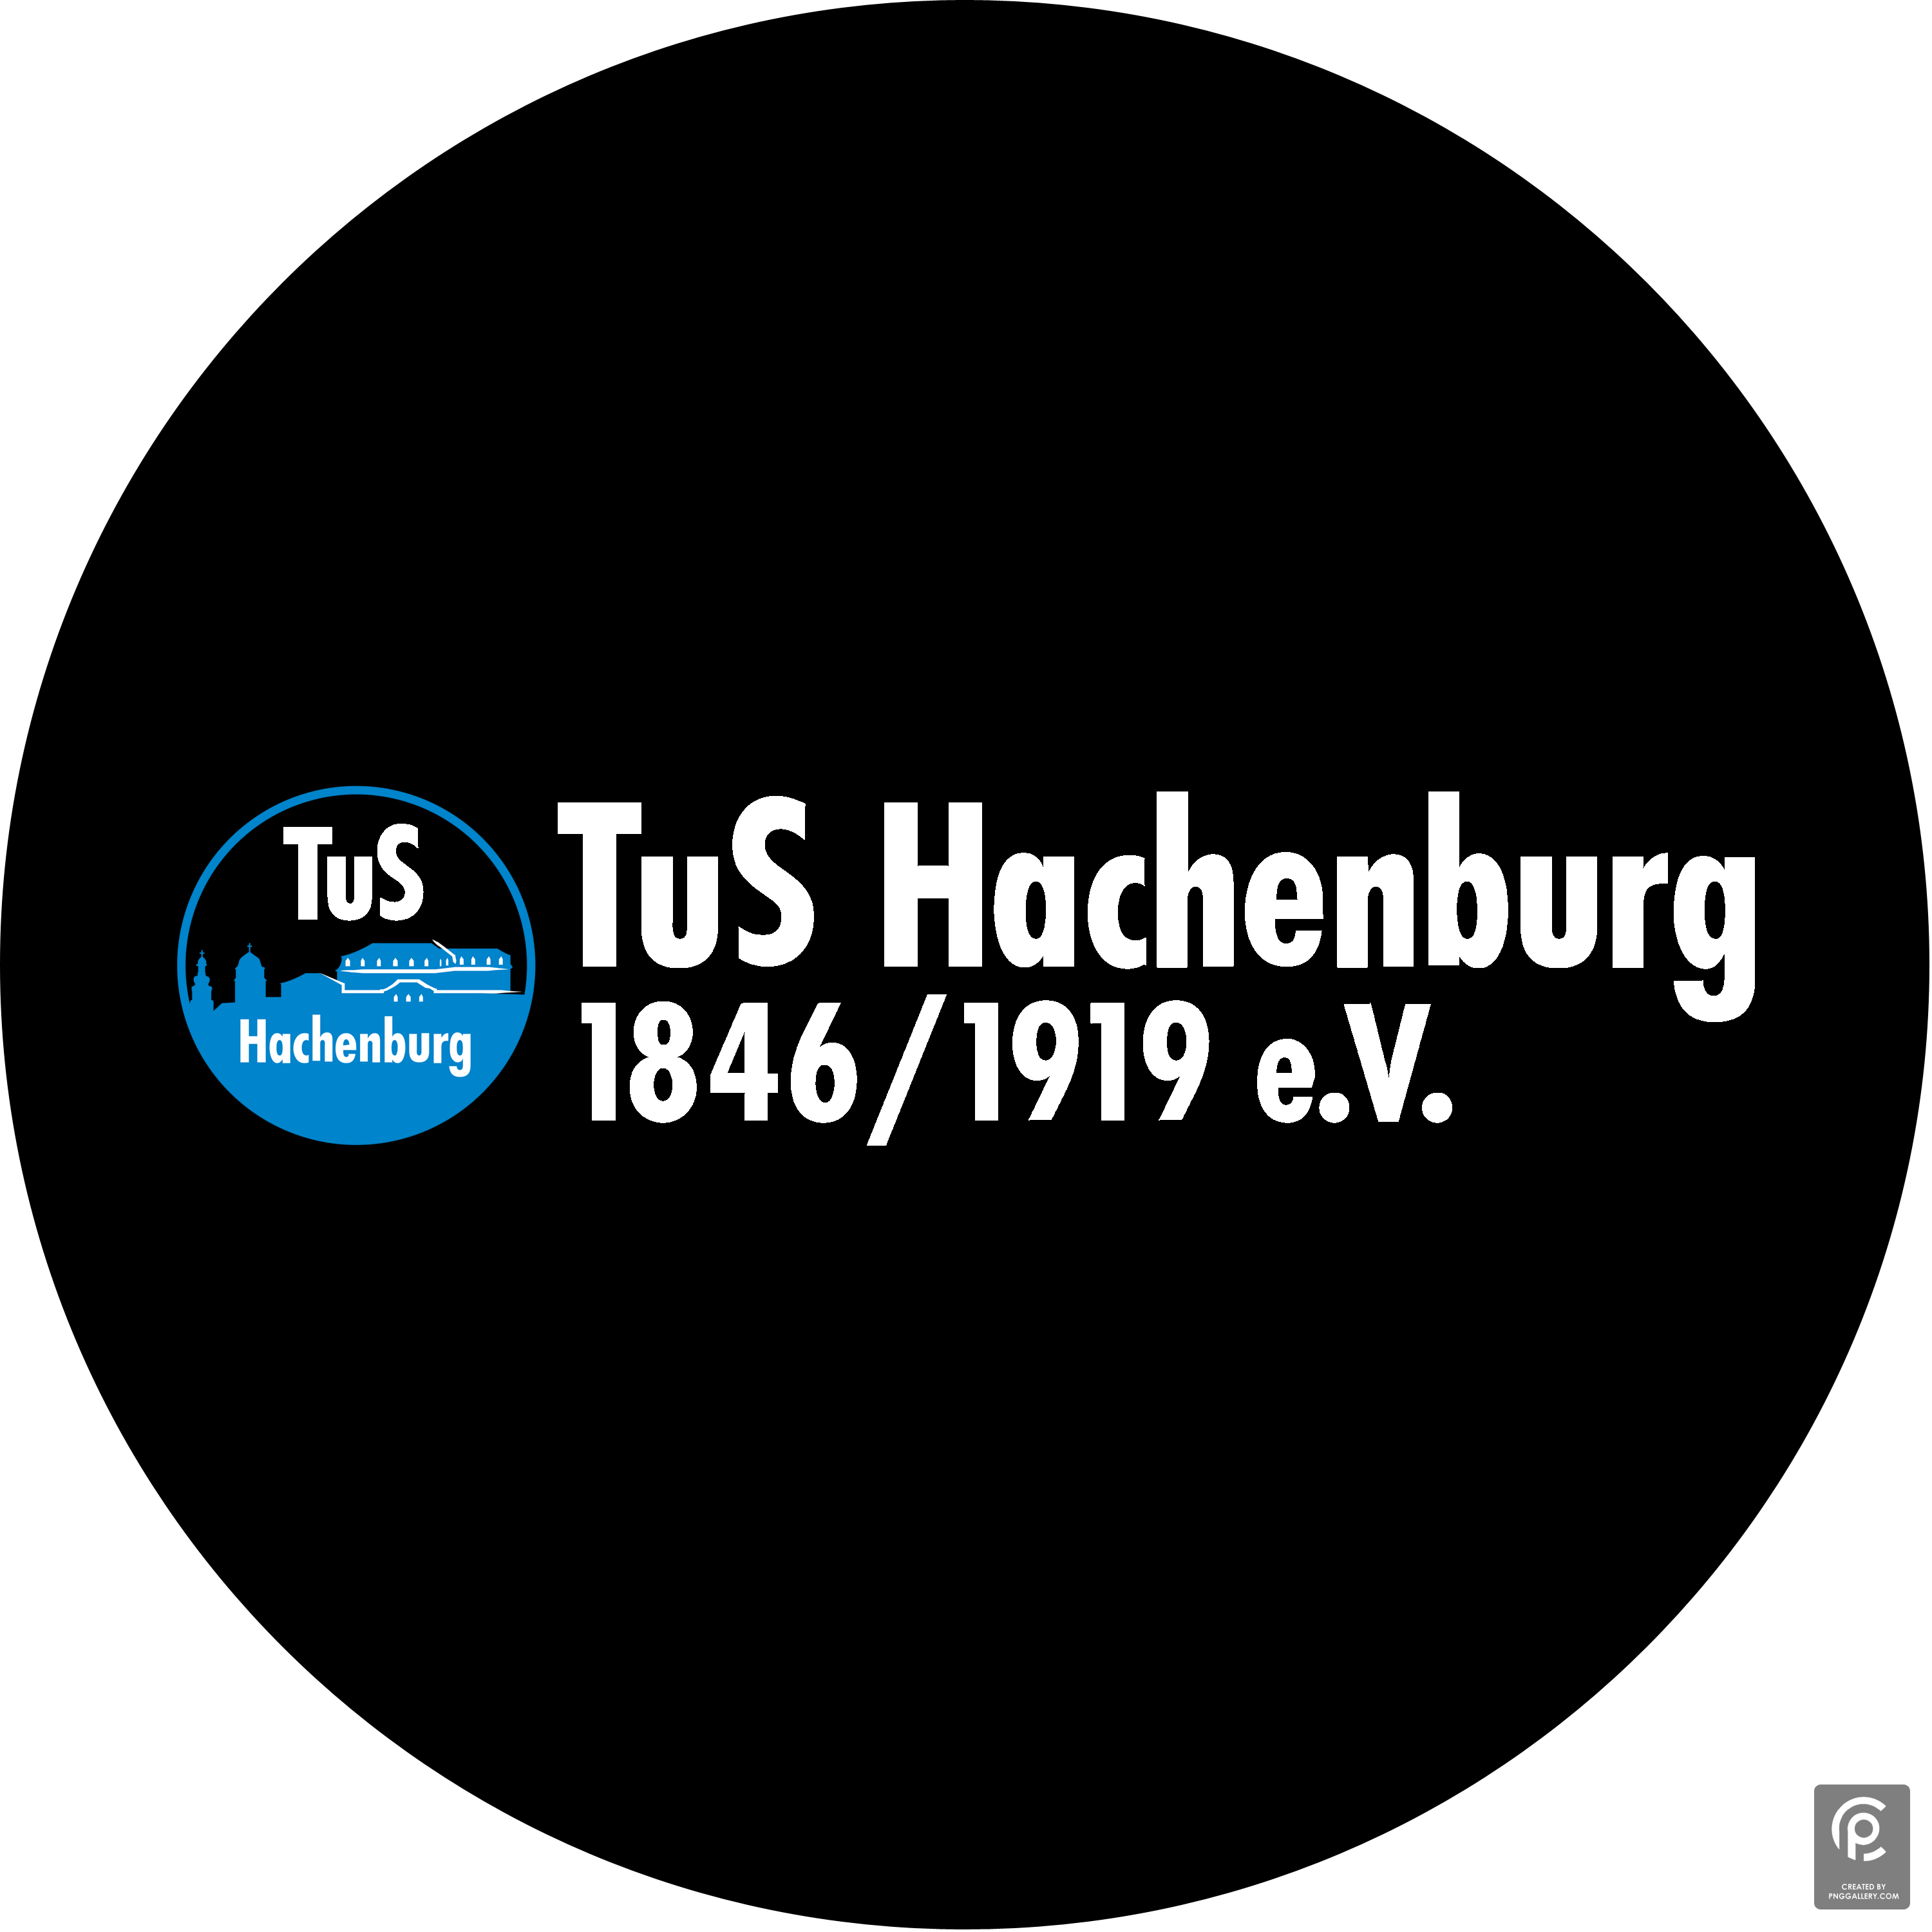 Tus Hachenburg Logo 2022 Transparent Clipart